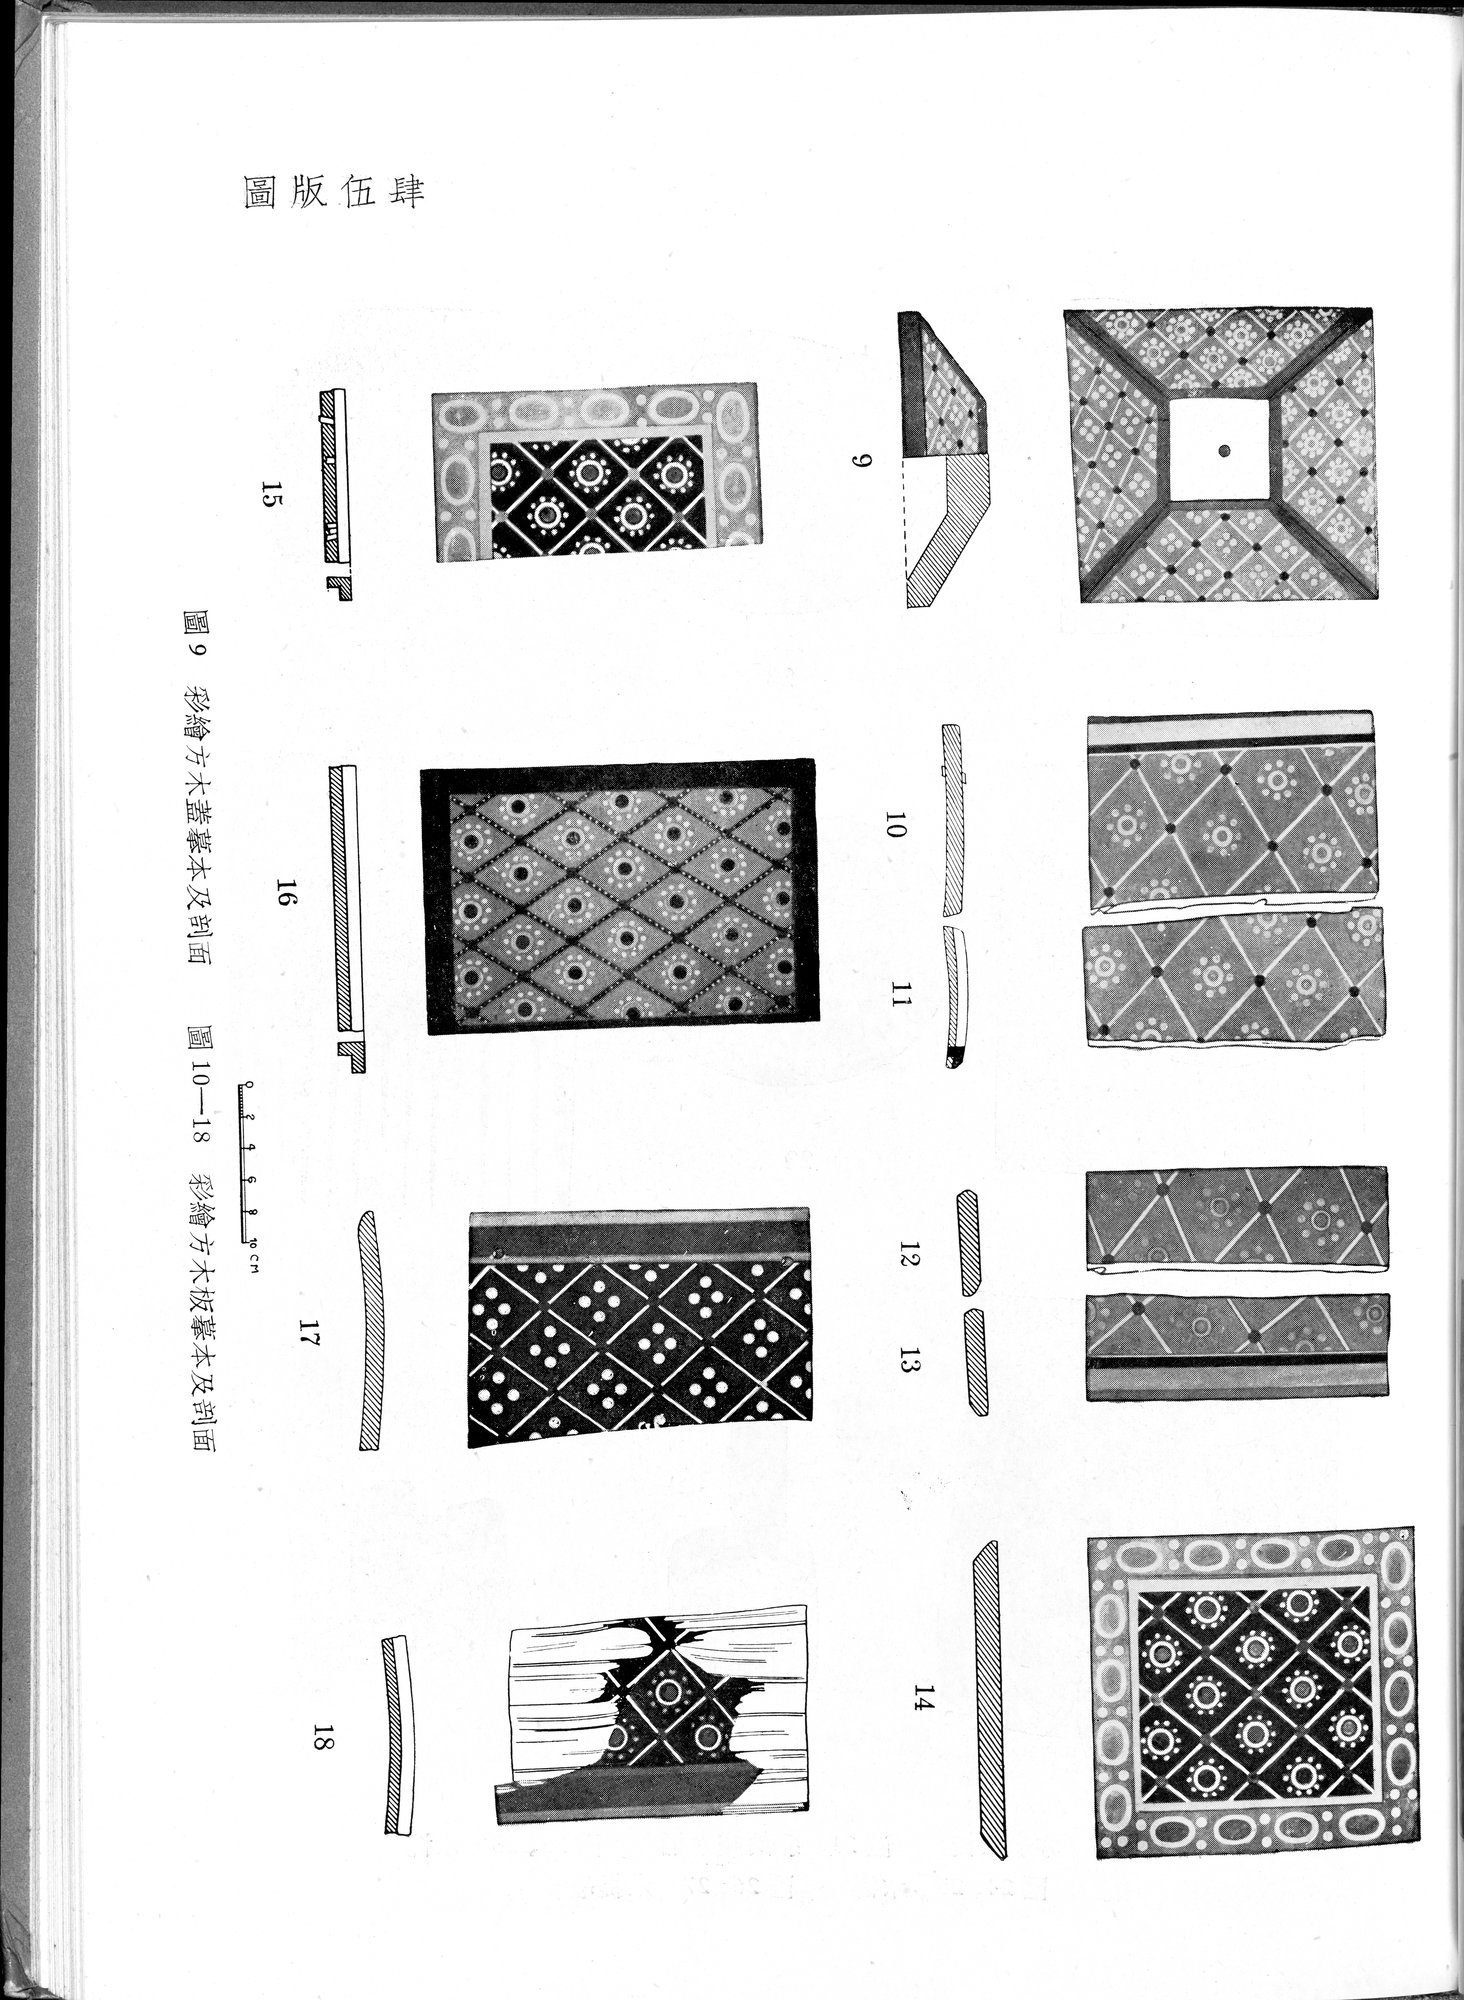 塔里木盆地考古記 : vol.1 / Page 279 (Grayscale High Resolution Image)